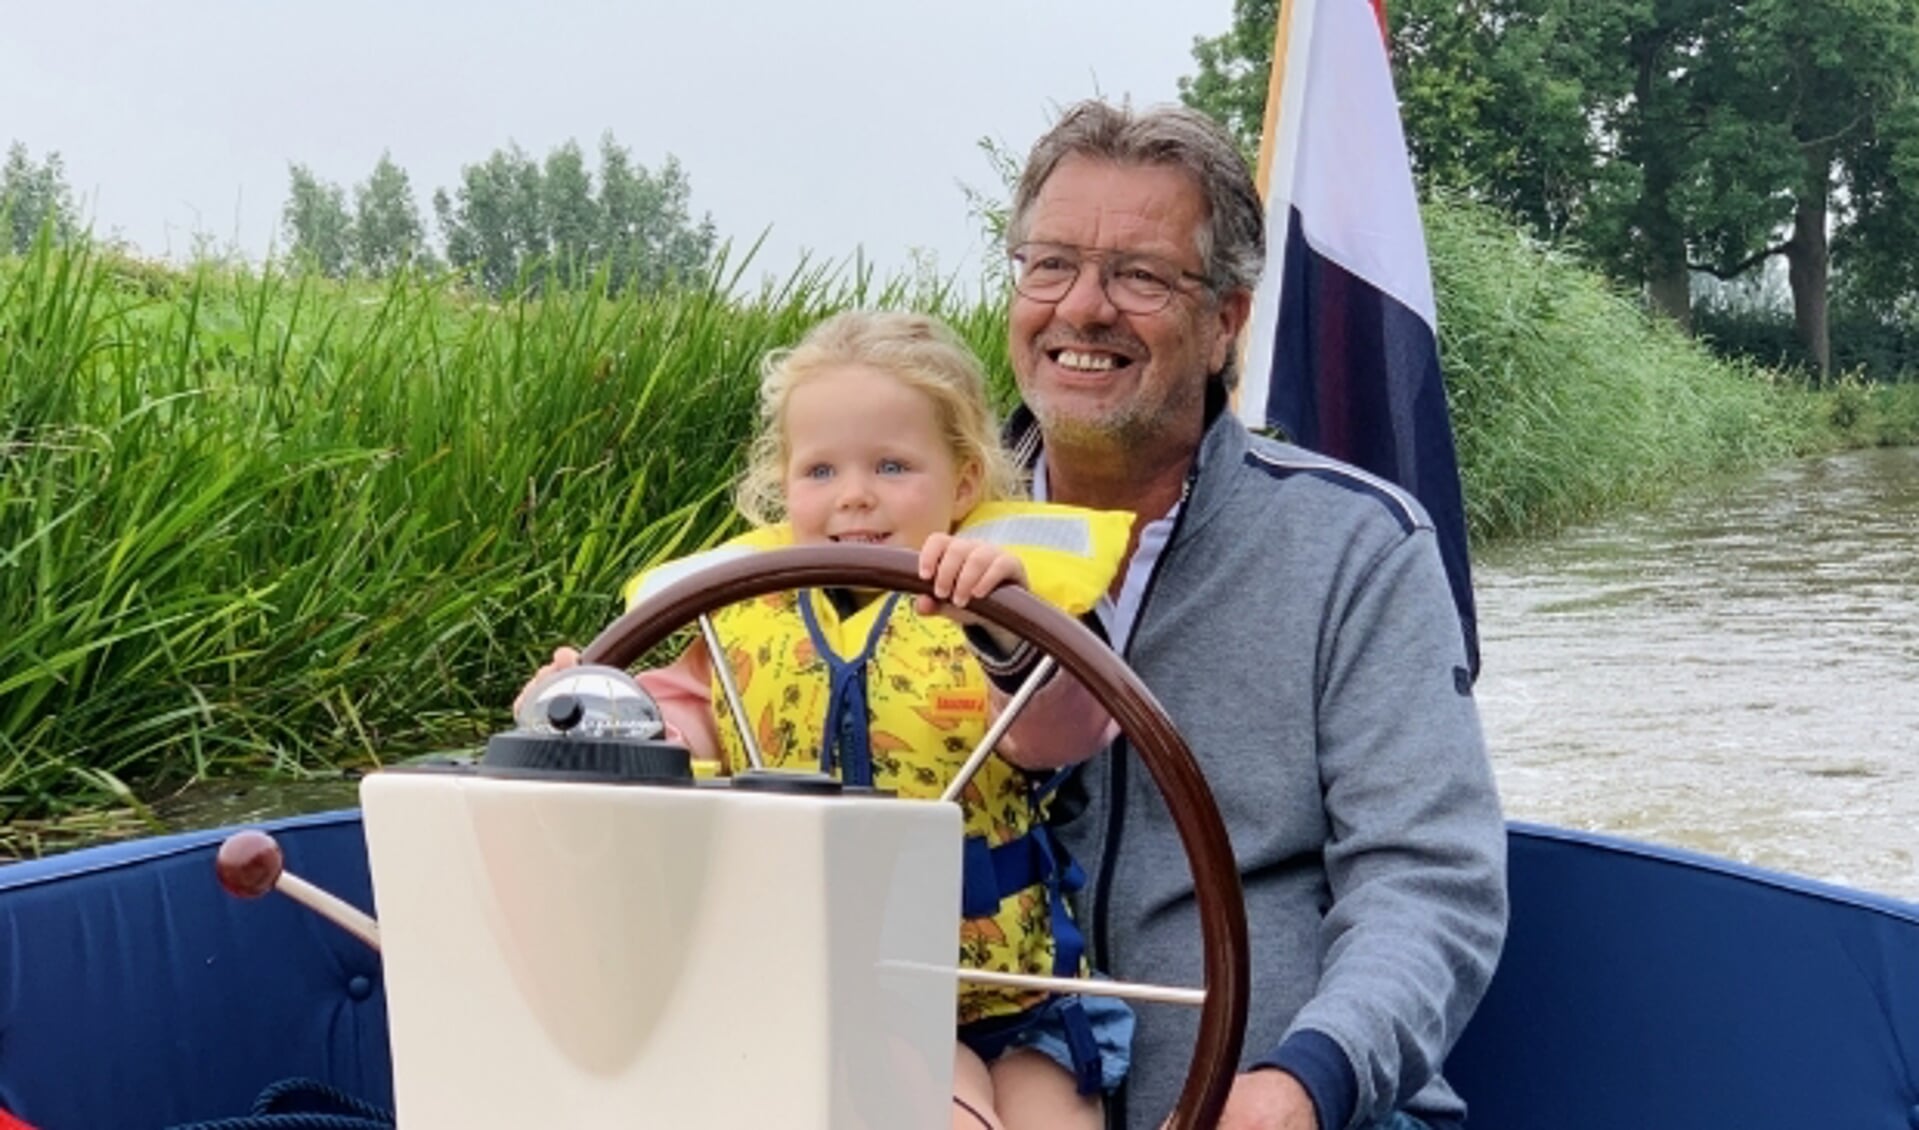 Koos van der Windt ging vanwege corona naar Friesland om heerlijk te varen. Hier samen met kleindochter Mila. (Foto: Tim van der Windt)